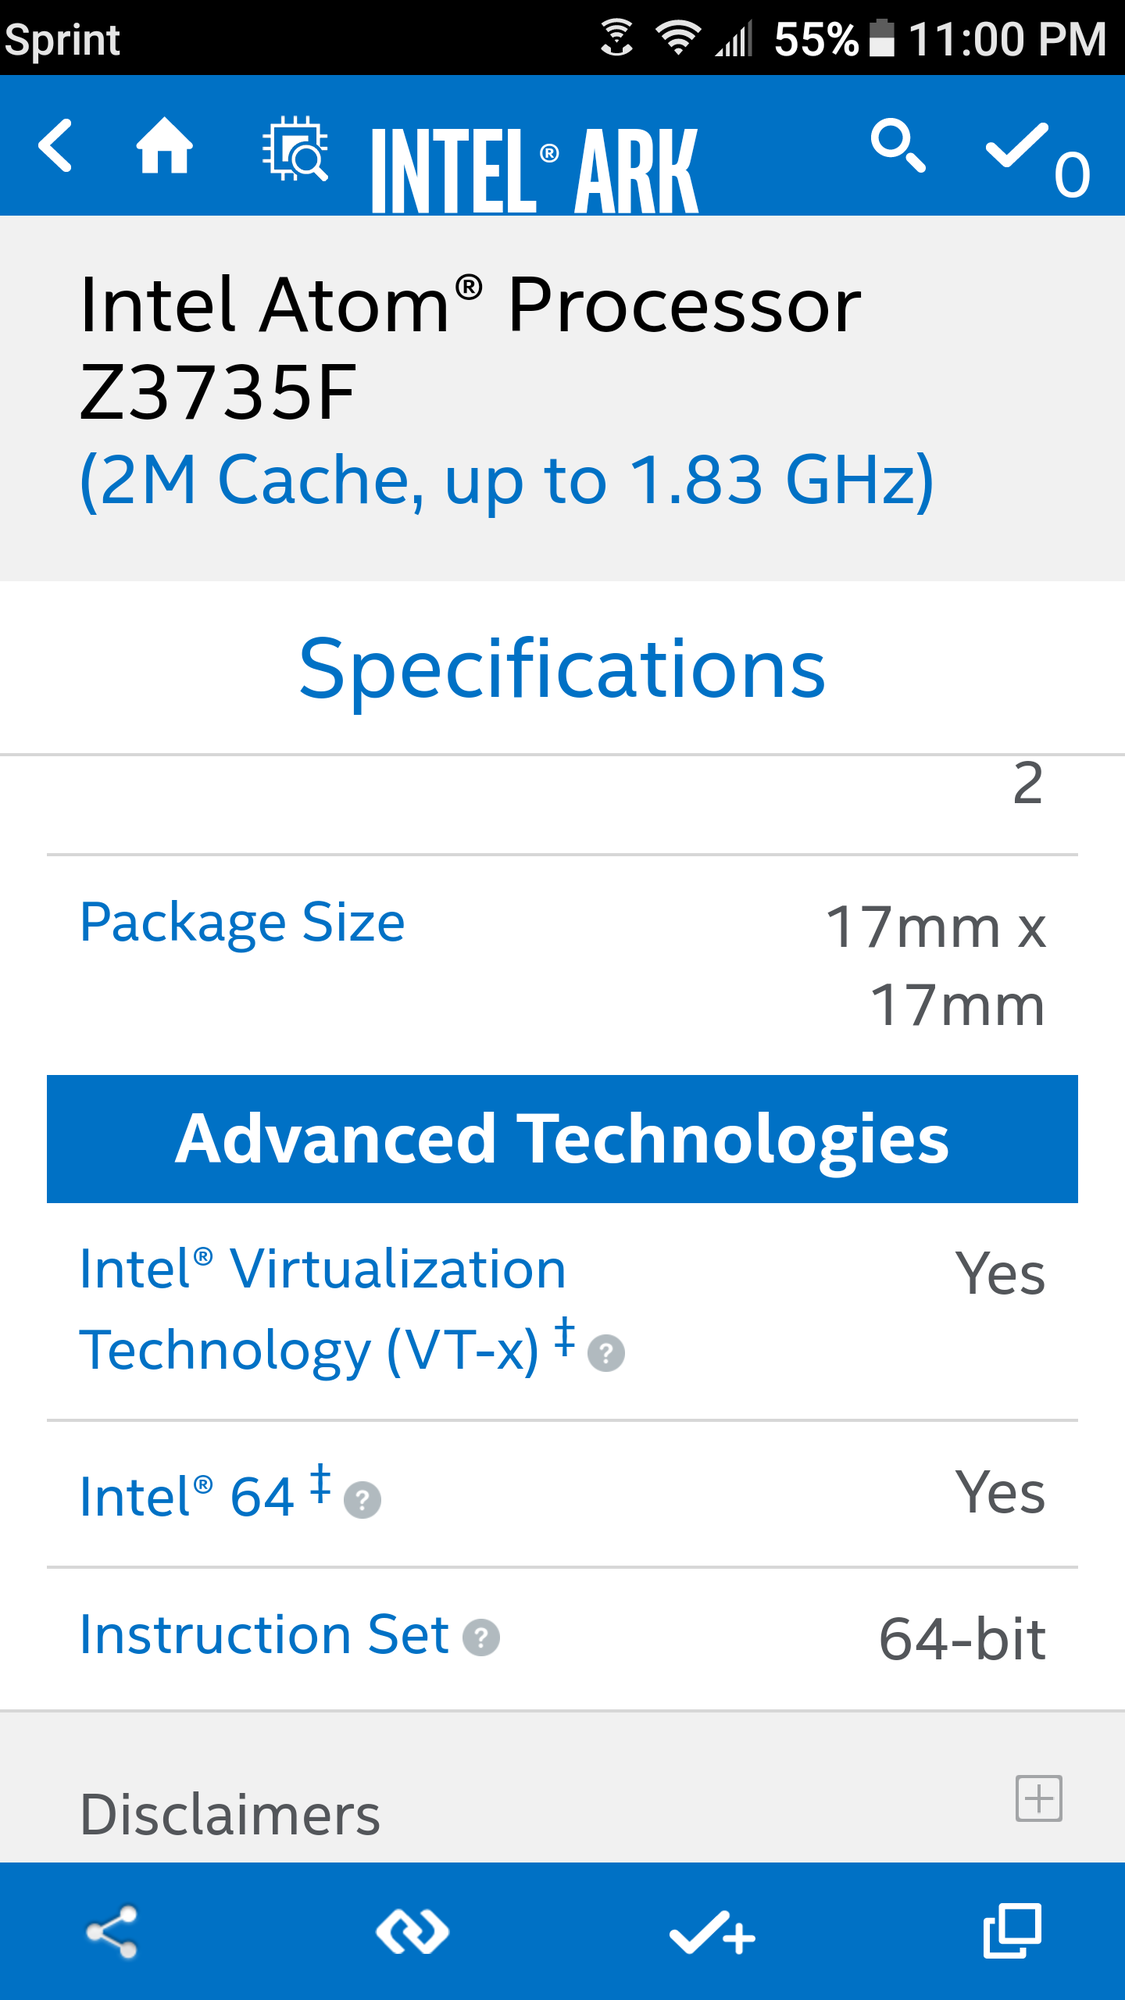 Intel Atom Z3795 on tablet can it install Windows 10 64-bit? e7177fff-b6e3-422f-8cc6-99c7649d3b9f?upload=true.png